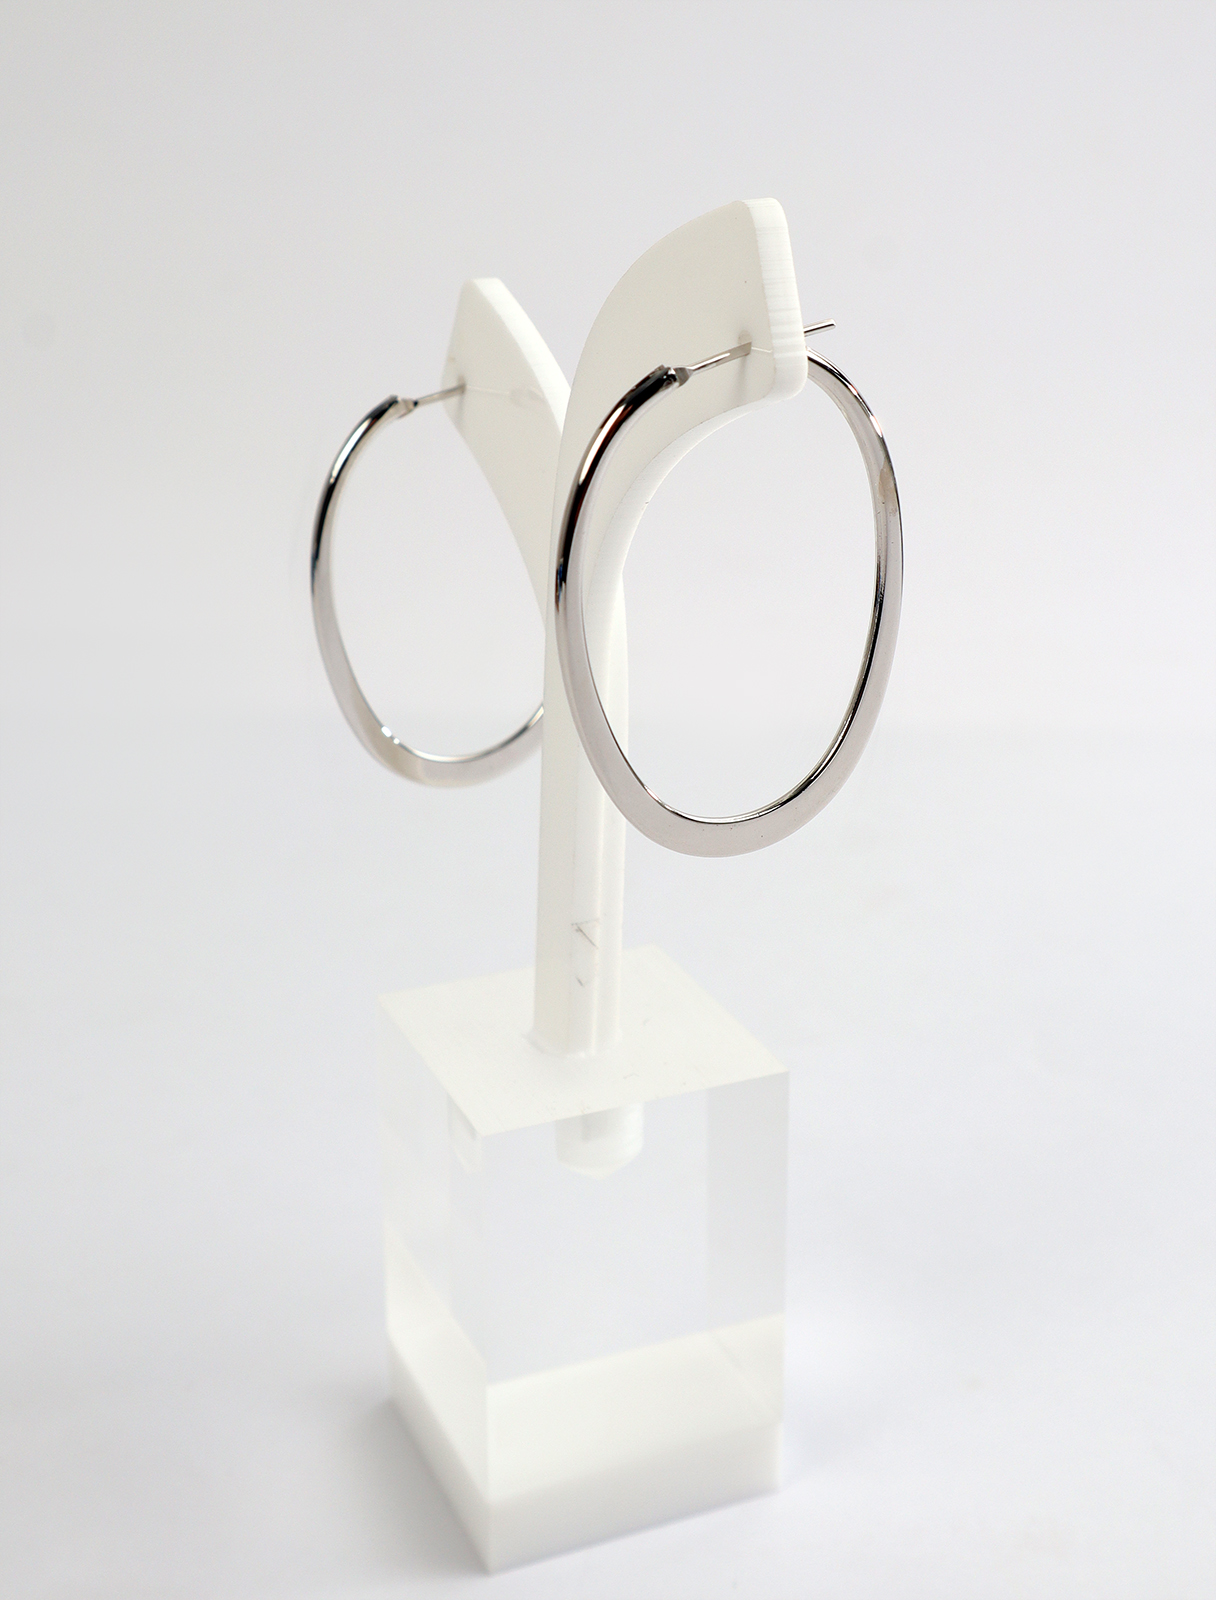 Modern earrings in an oval shape